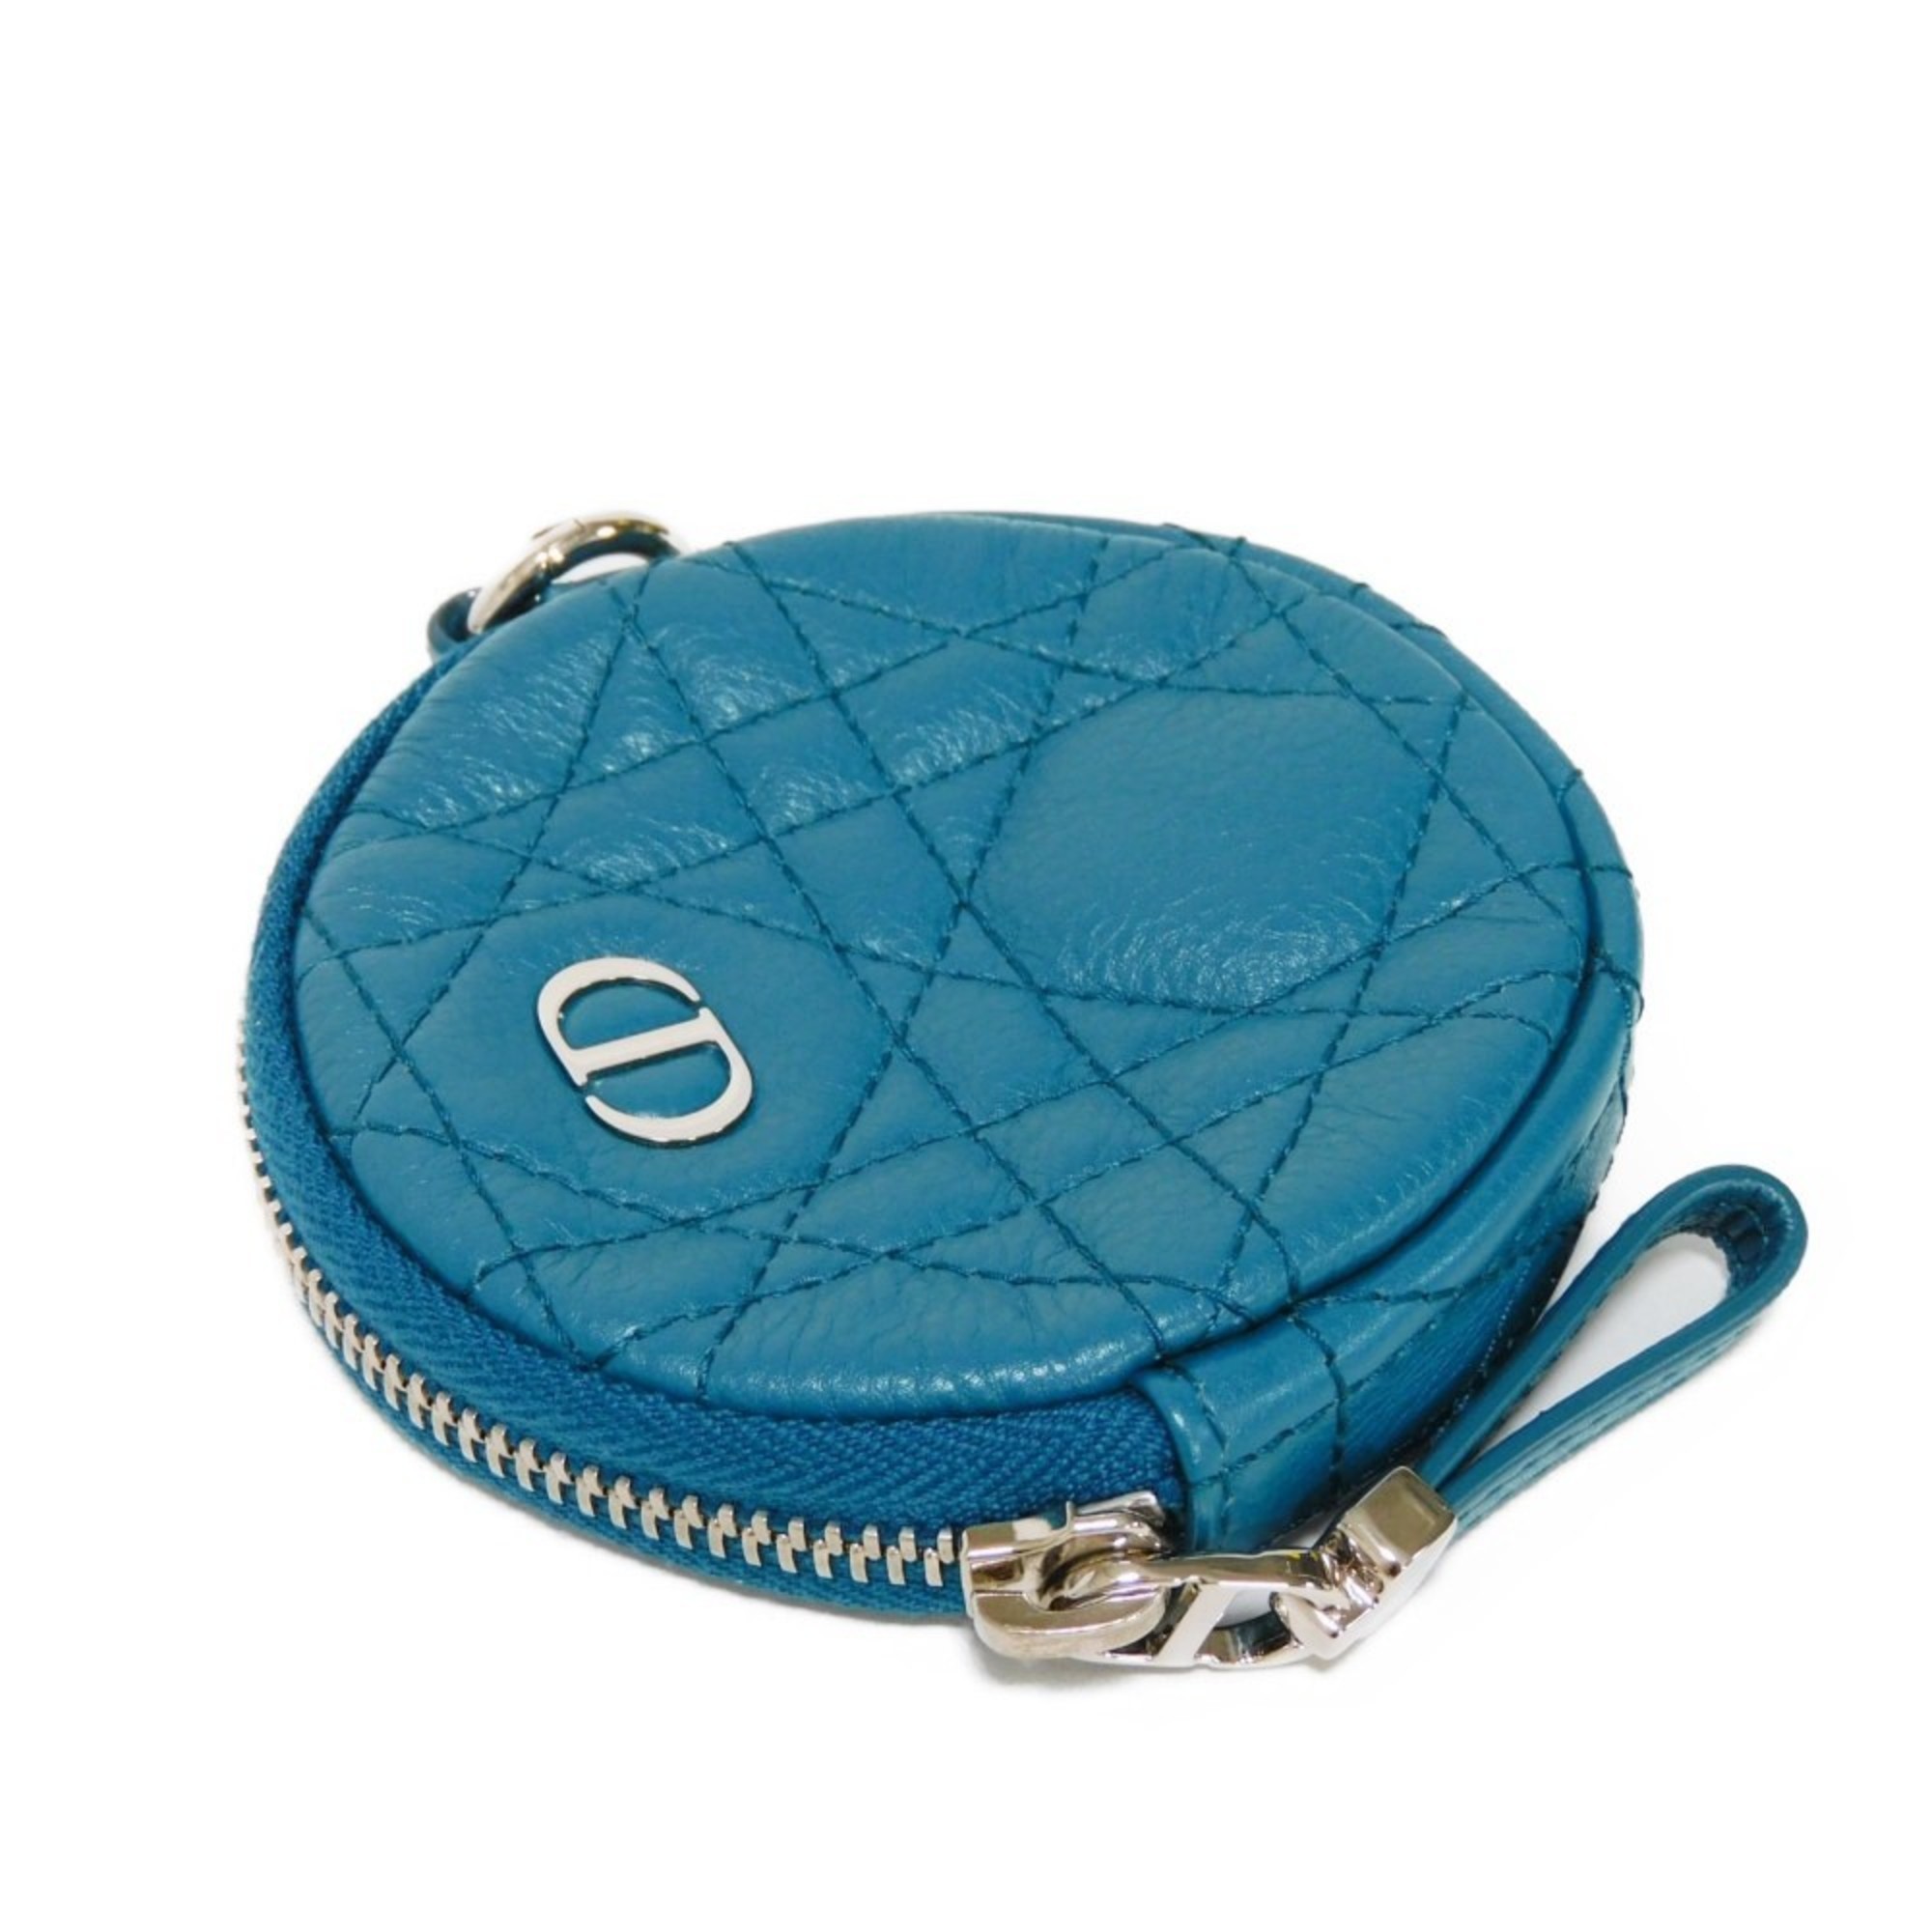 Christian Dior Dior Coin Case Caro Round Wallet Compact Cannage Calfskin Dark Blue S5092UWHC Women's